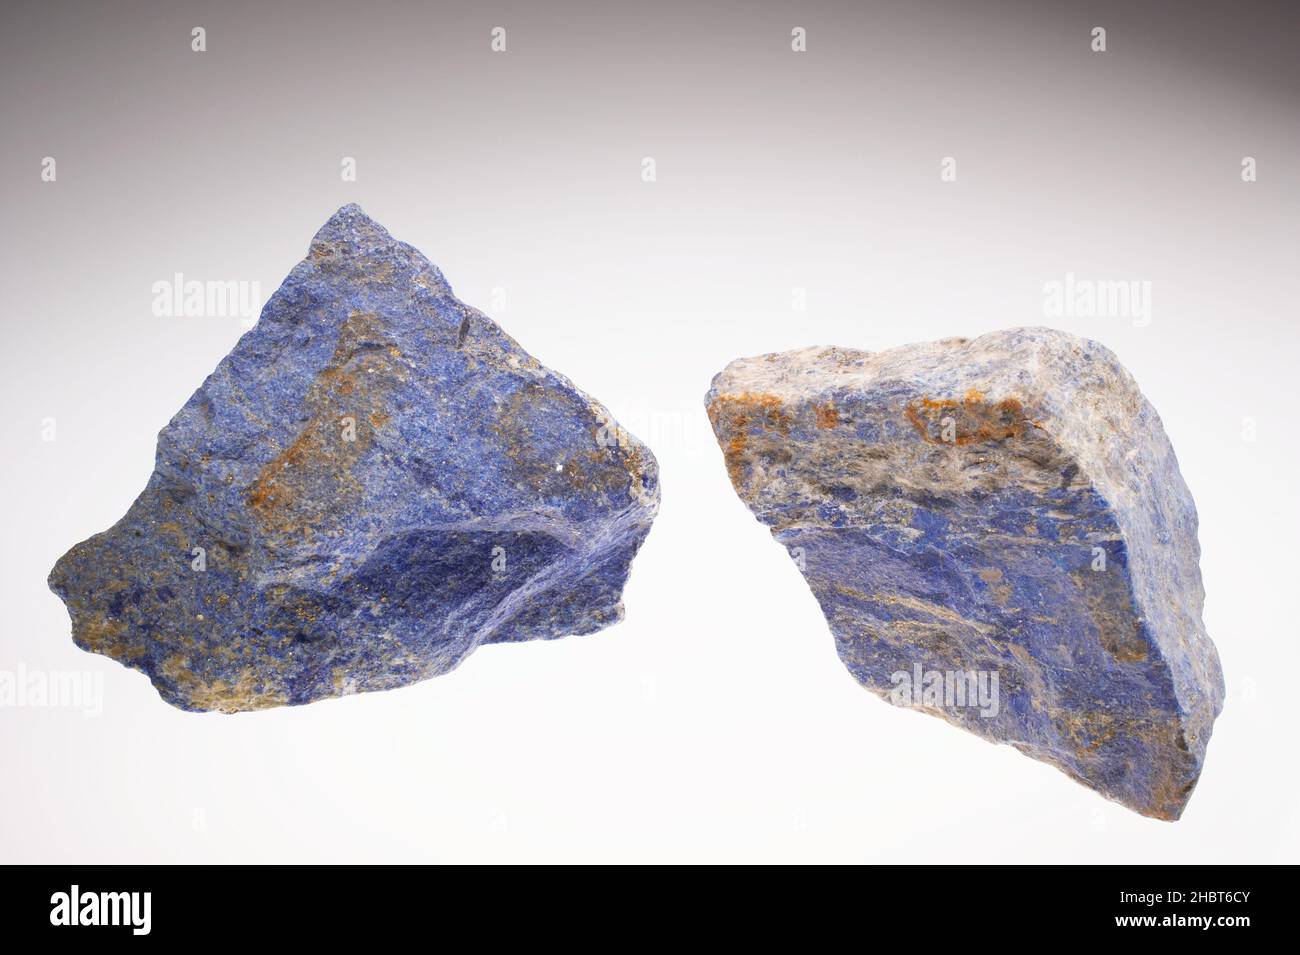 Primo piano di Royal blue lapis lazuli, una gemma semi-preziosa. La gemma era molto apprezzata dagli antichi sovrani babilonesi ed egiziani. Oggi, i minatori recuperano la gemma solo da pochi depositi in tutto il mondo. Un sito importante si trova nell'aspra Valle di Kokcha nel nord dell'Afghanistan Foto Stock